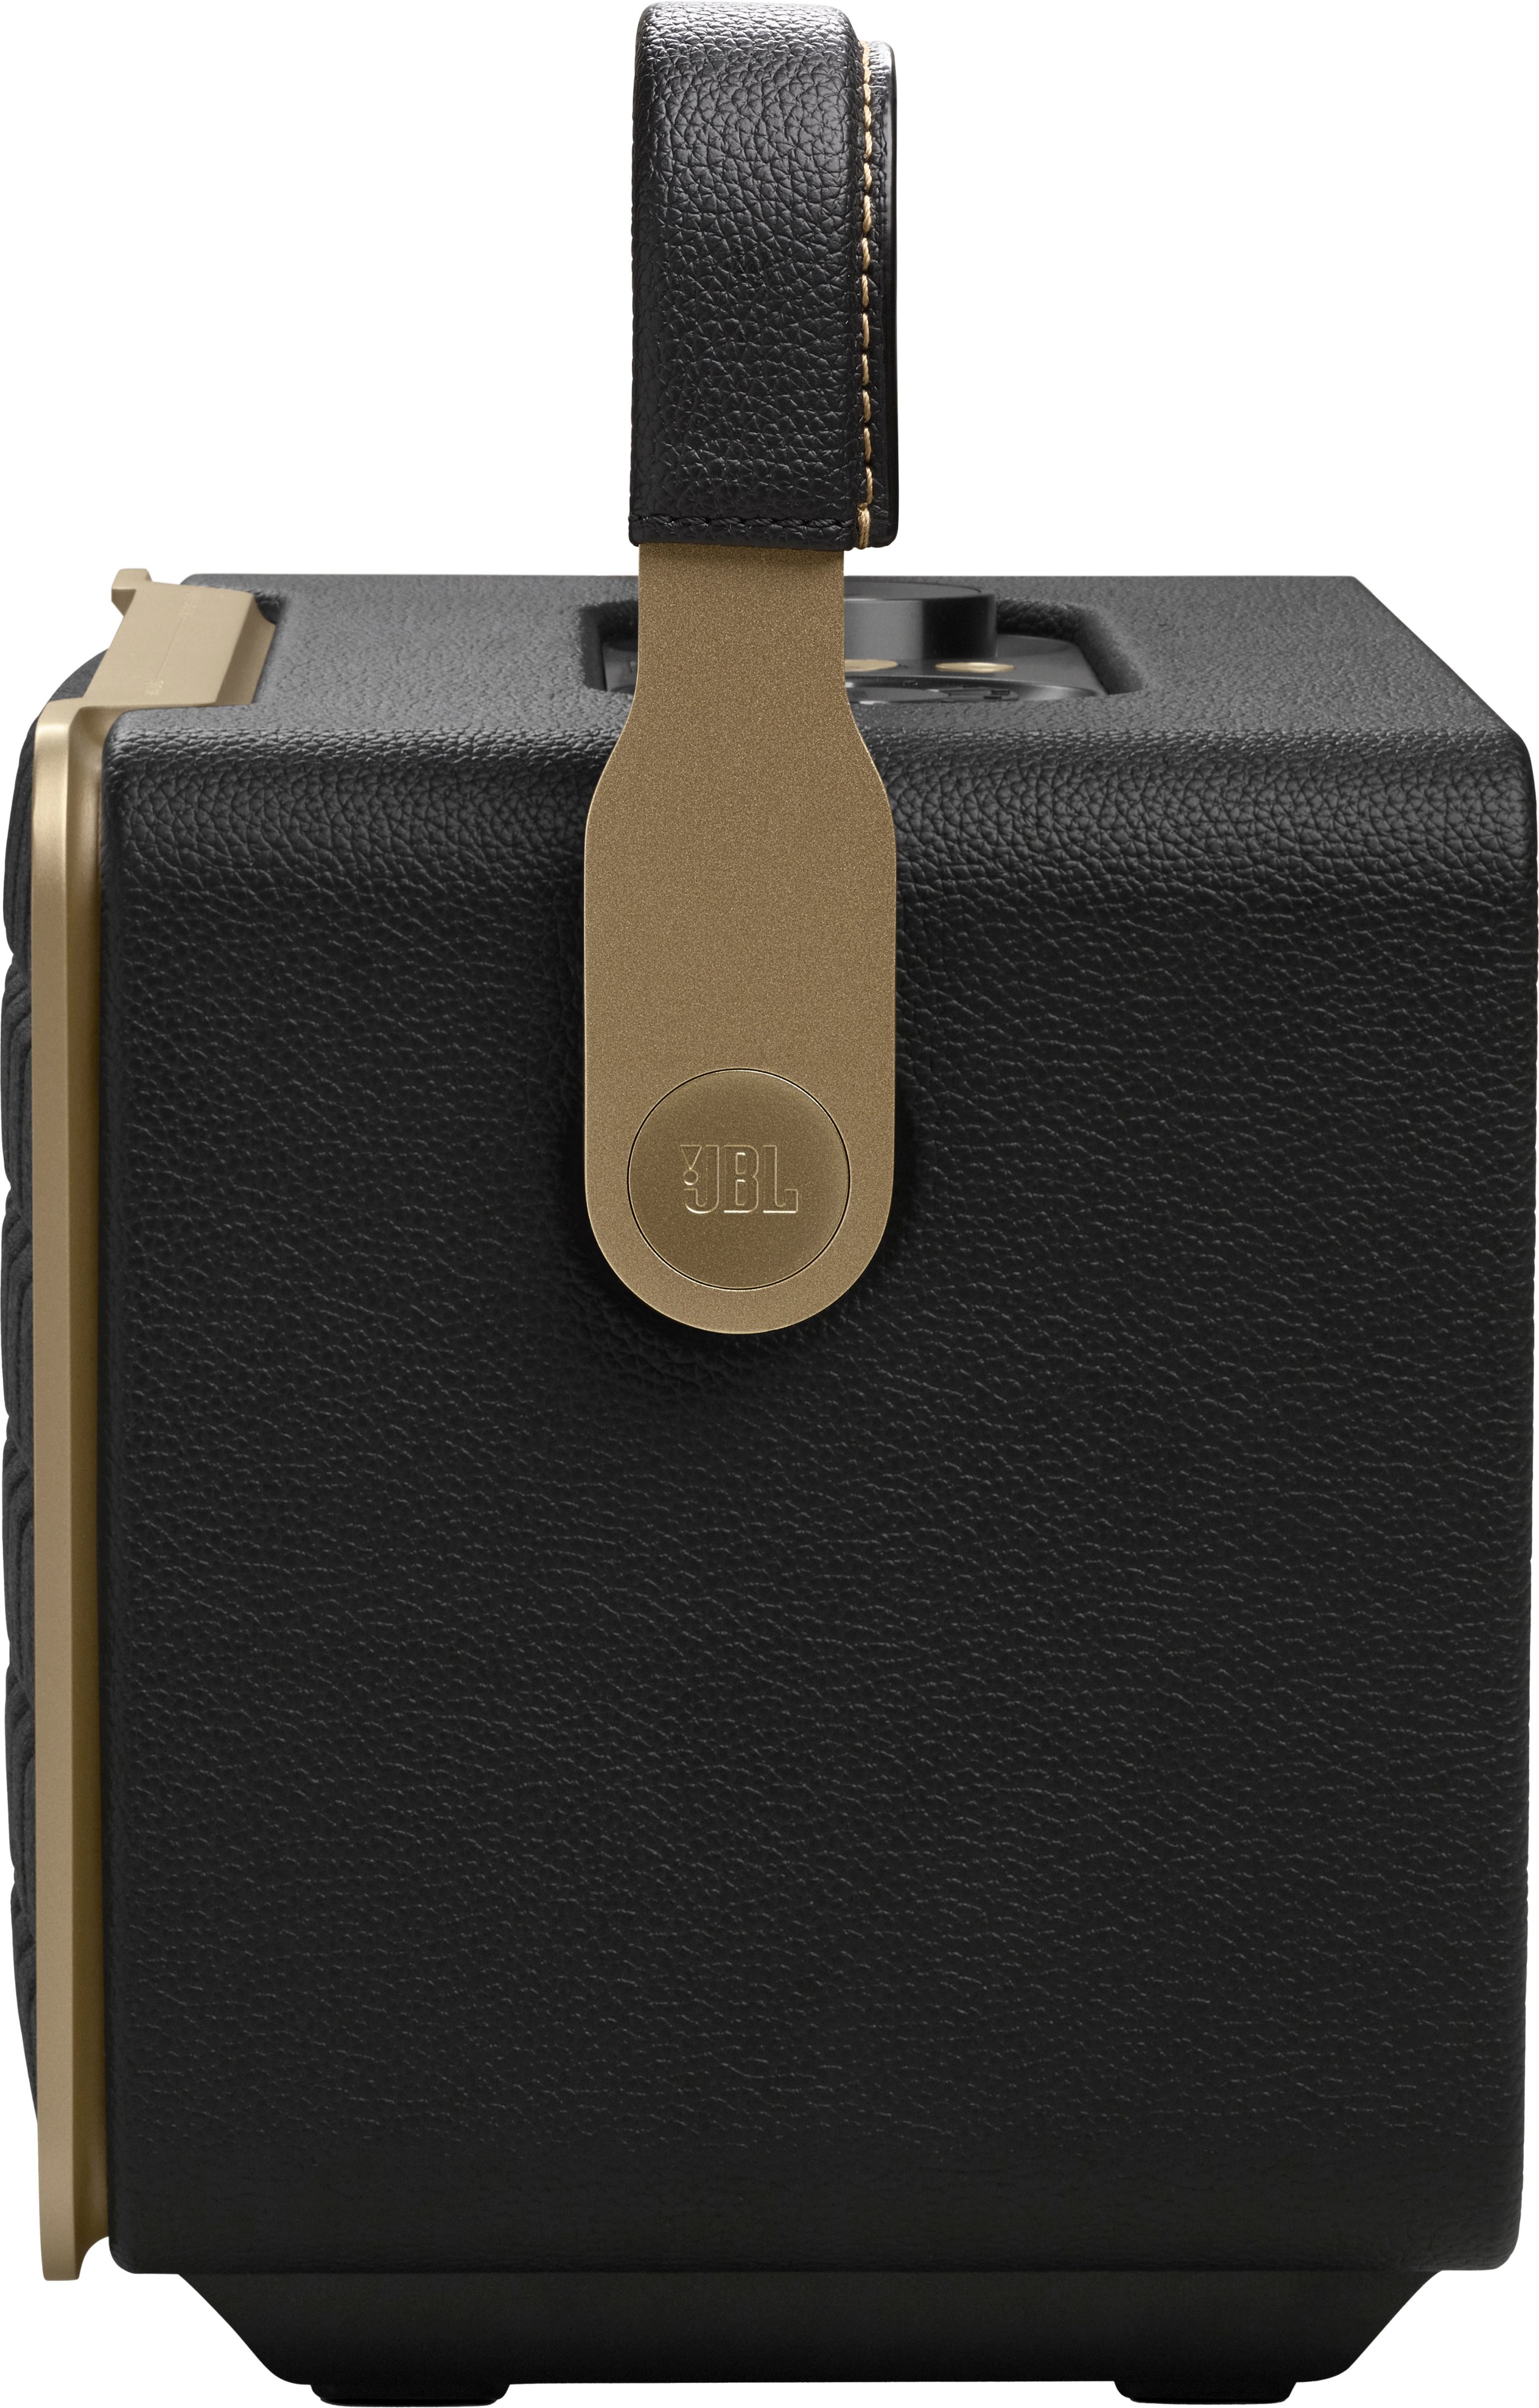 JBL Authentics 300 Smart Speaker Home Best Buy Black - JBLAUTH300BLKAM